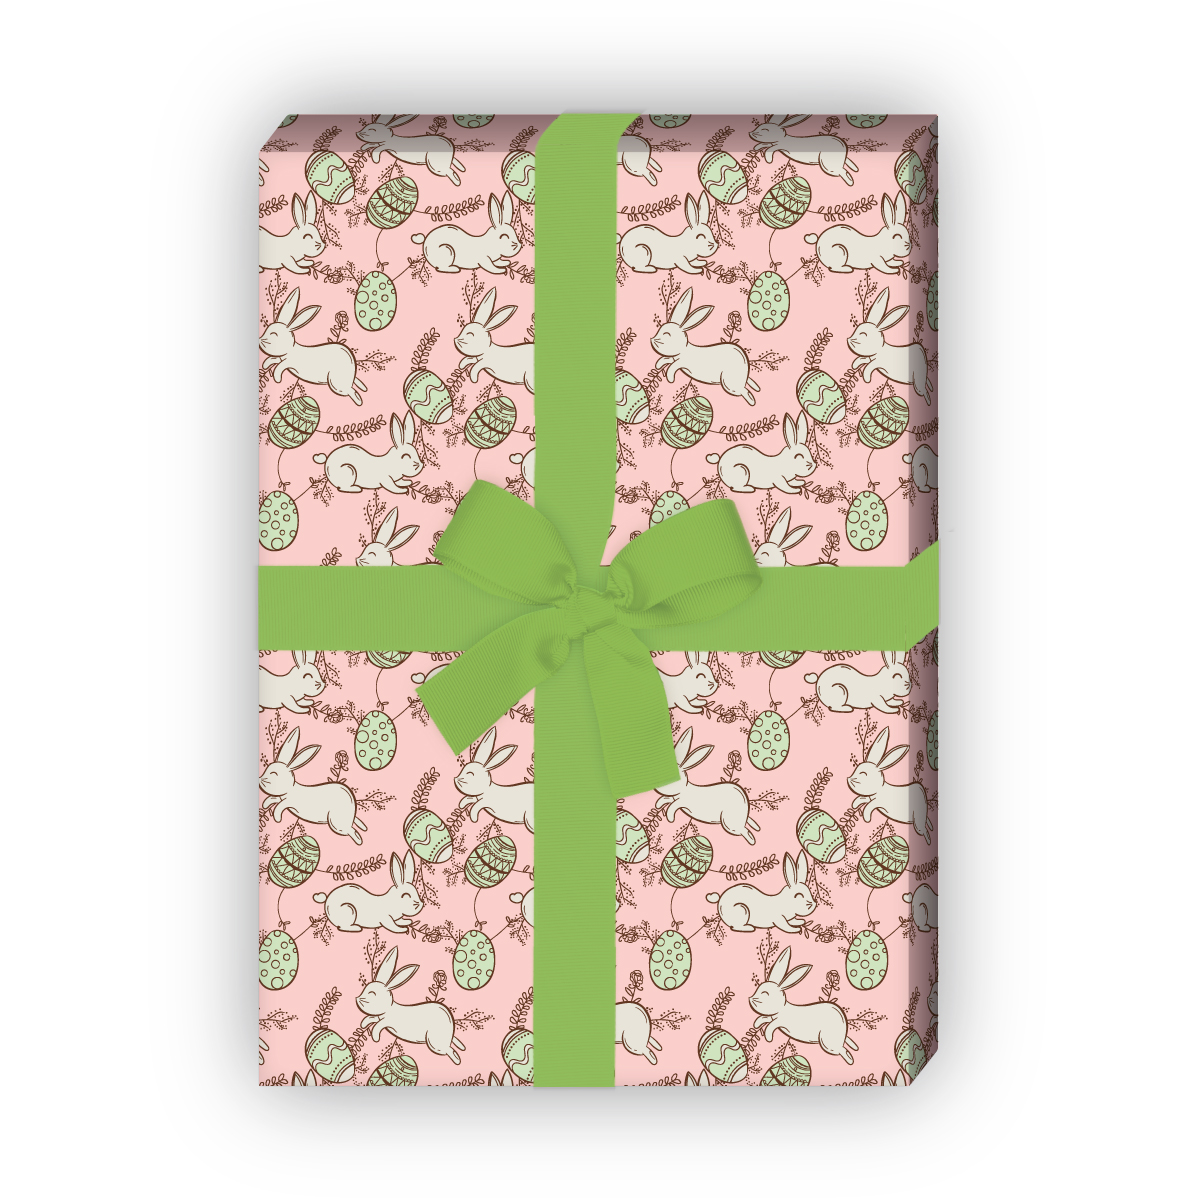 Kartenkaufrausch: Schönes Oster Geschenkpapier mit aus unserer Oster Papeterie in rosa